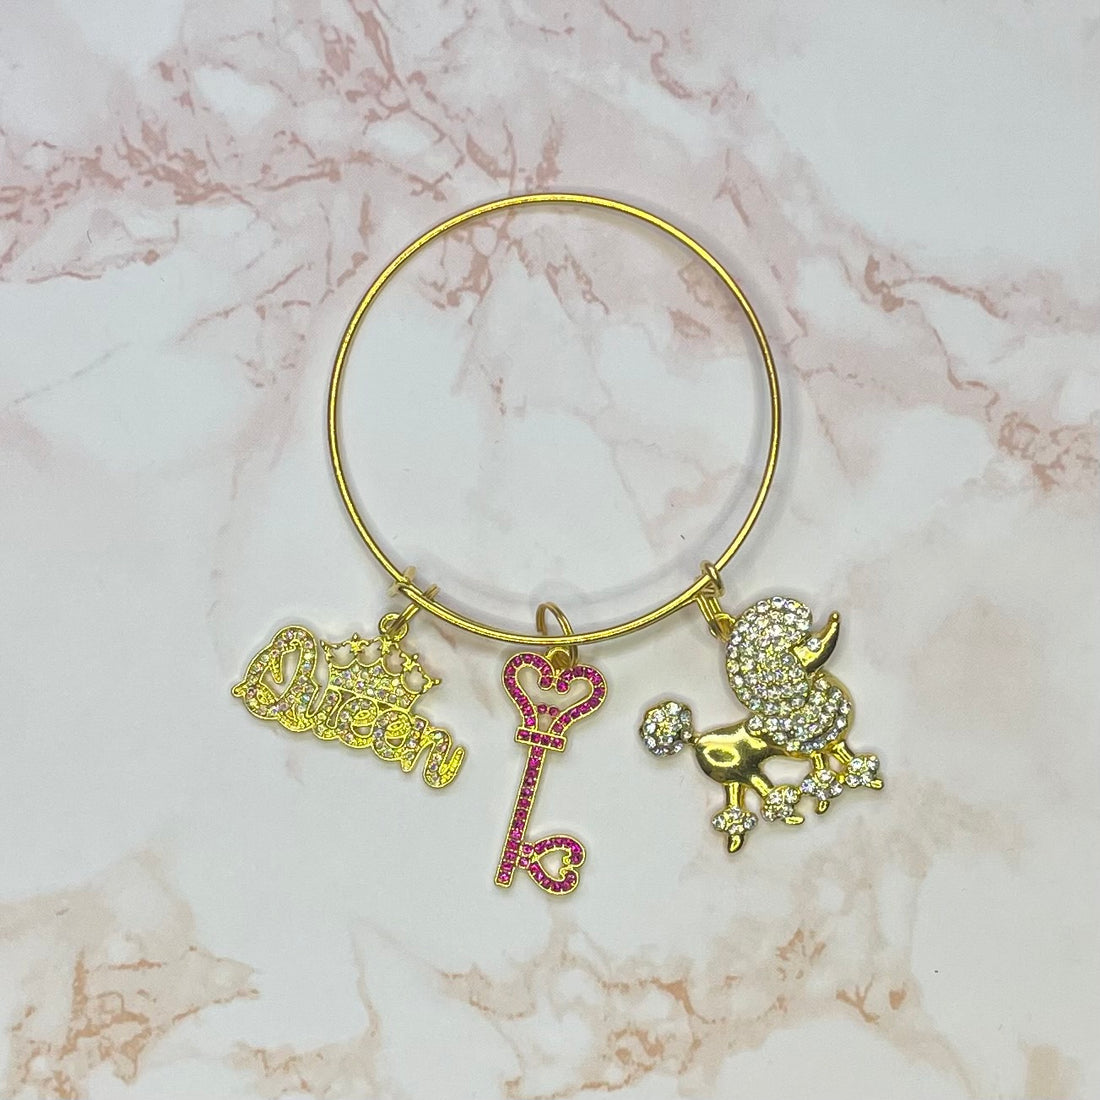 Poodle Gold Bangle Bracelet Charms By Prince™